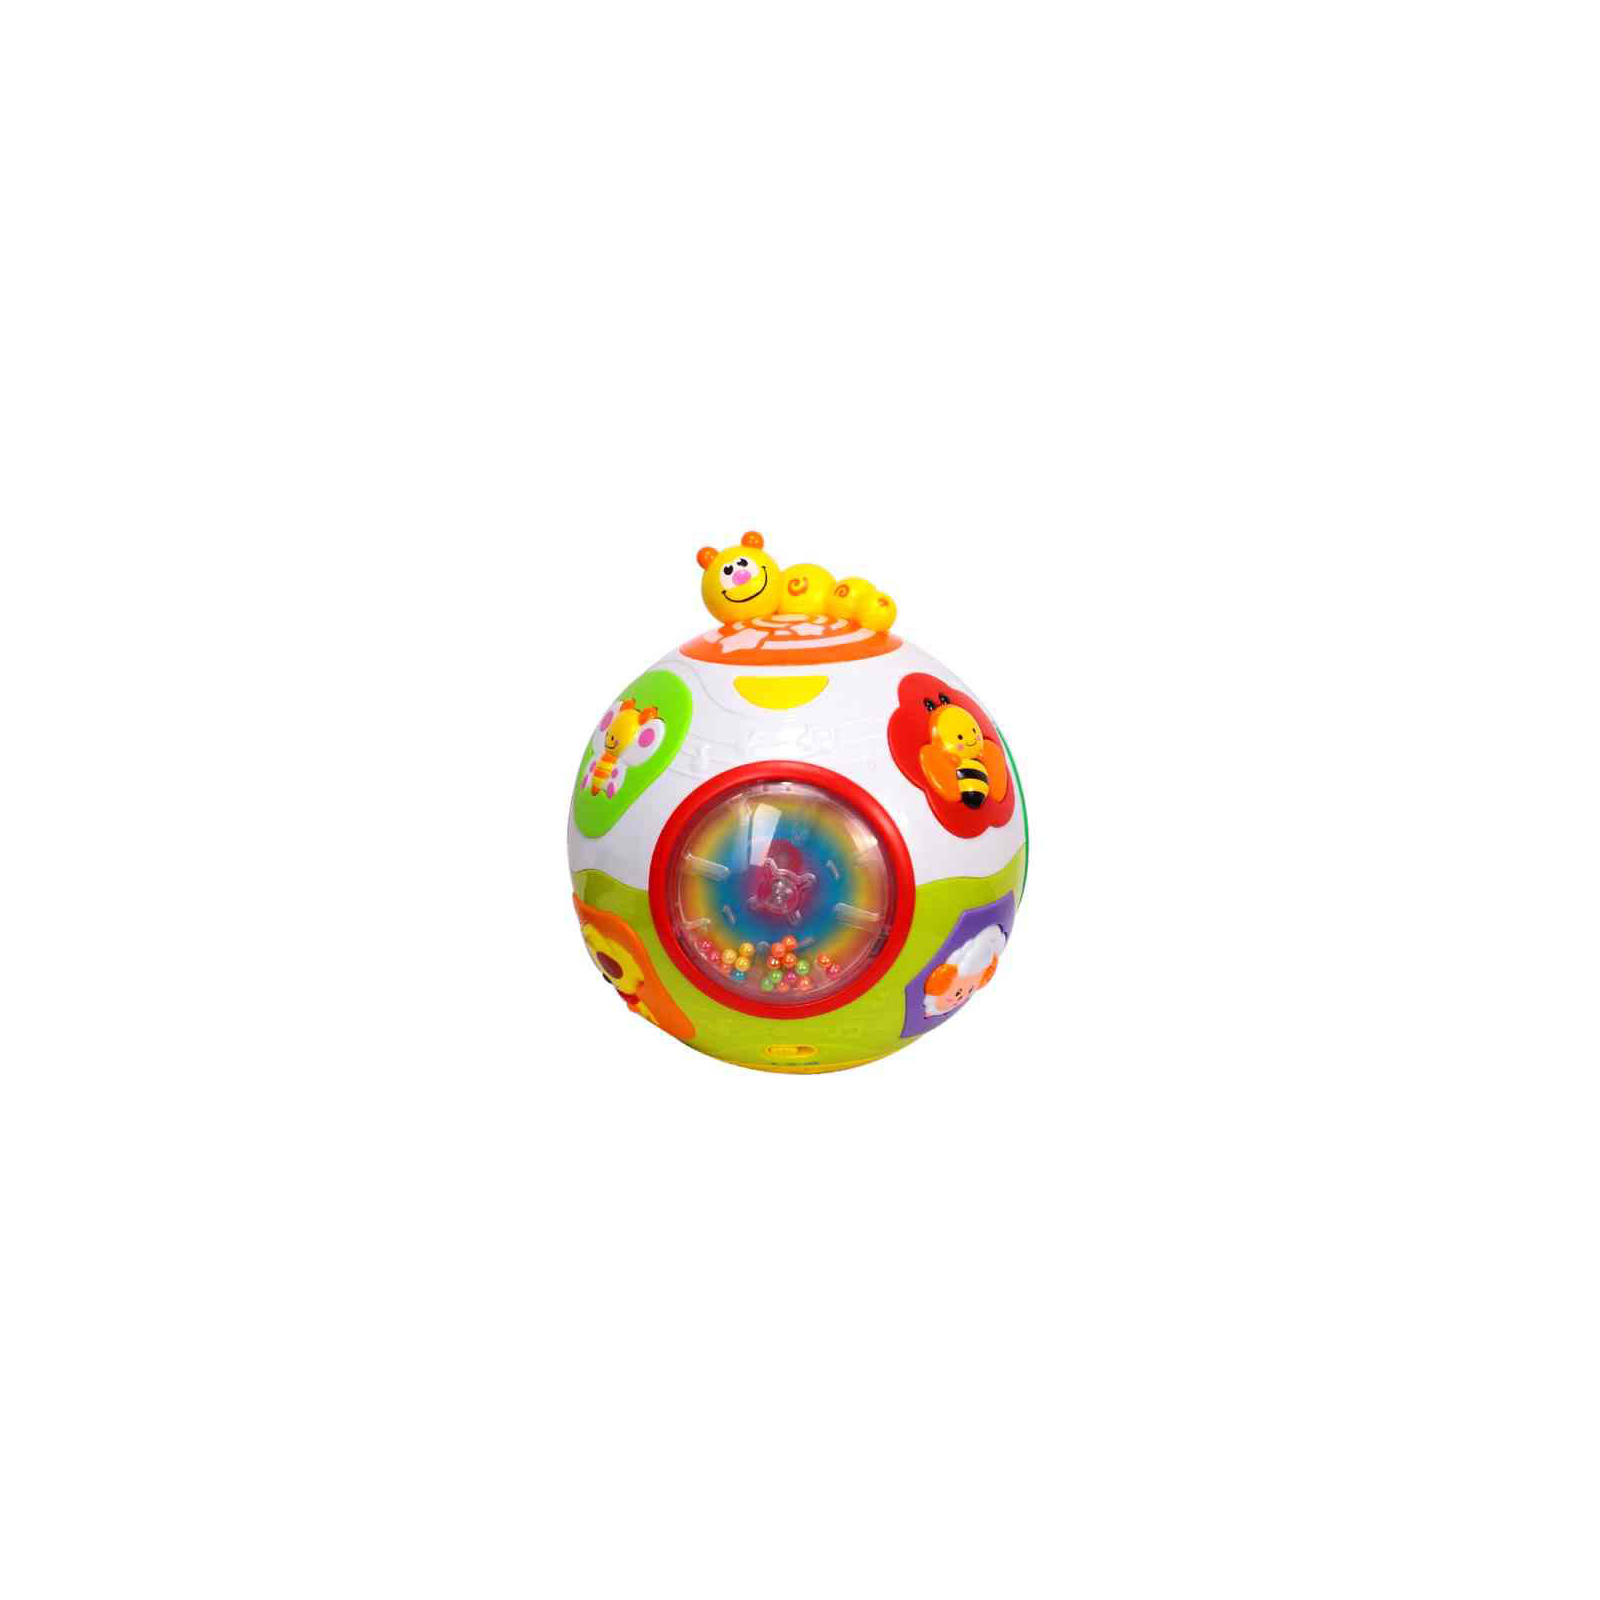 Развивающая игрушка Huile Toys Счастливый мячик (938)